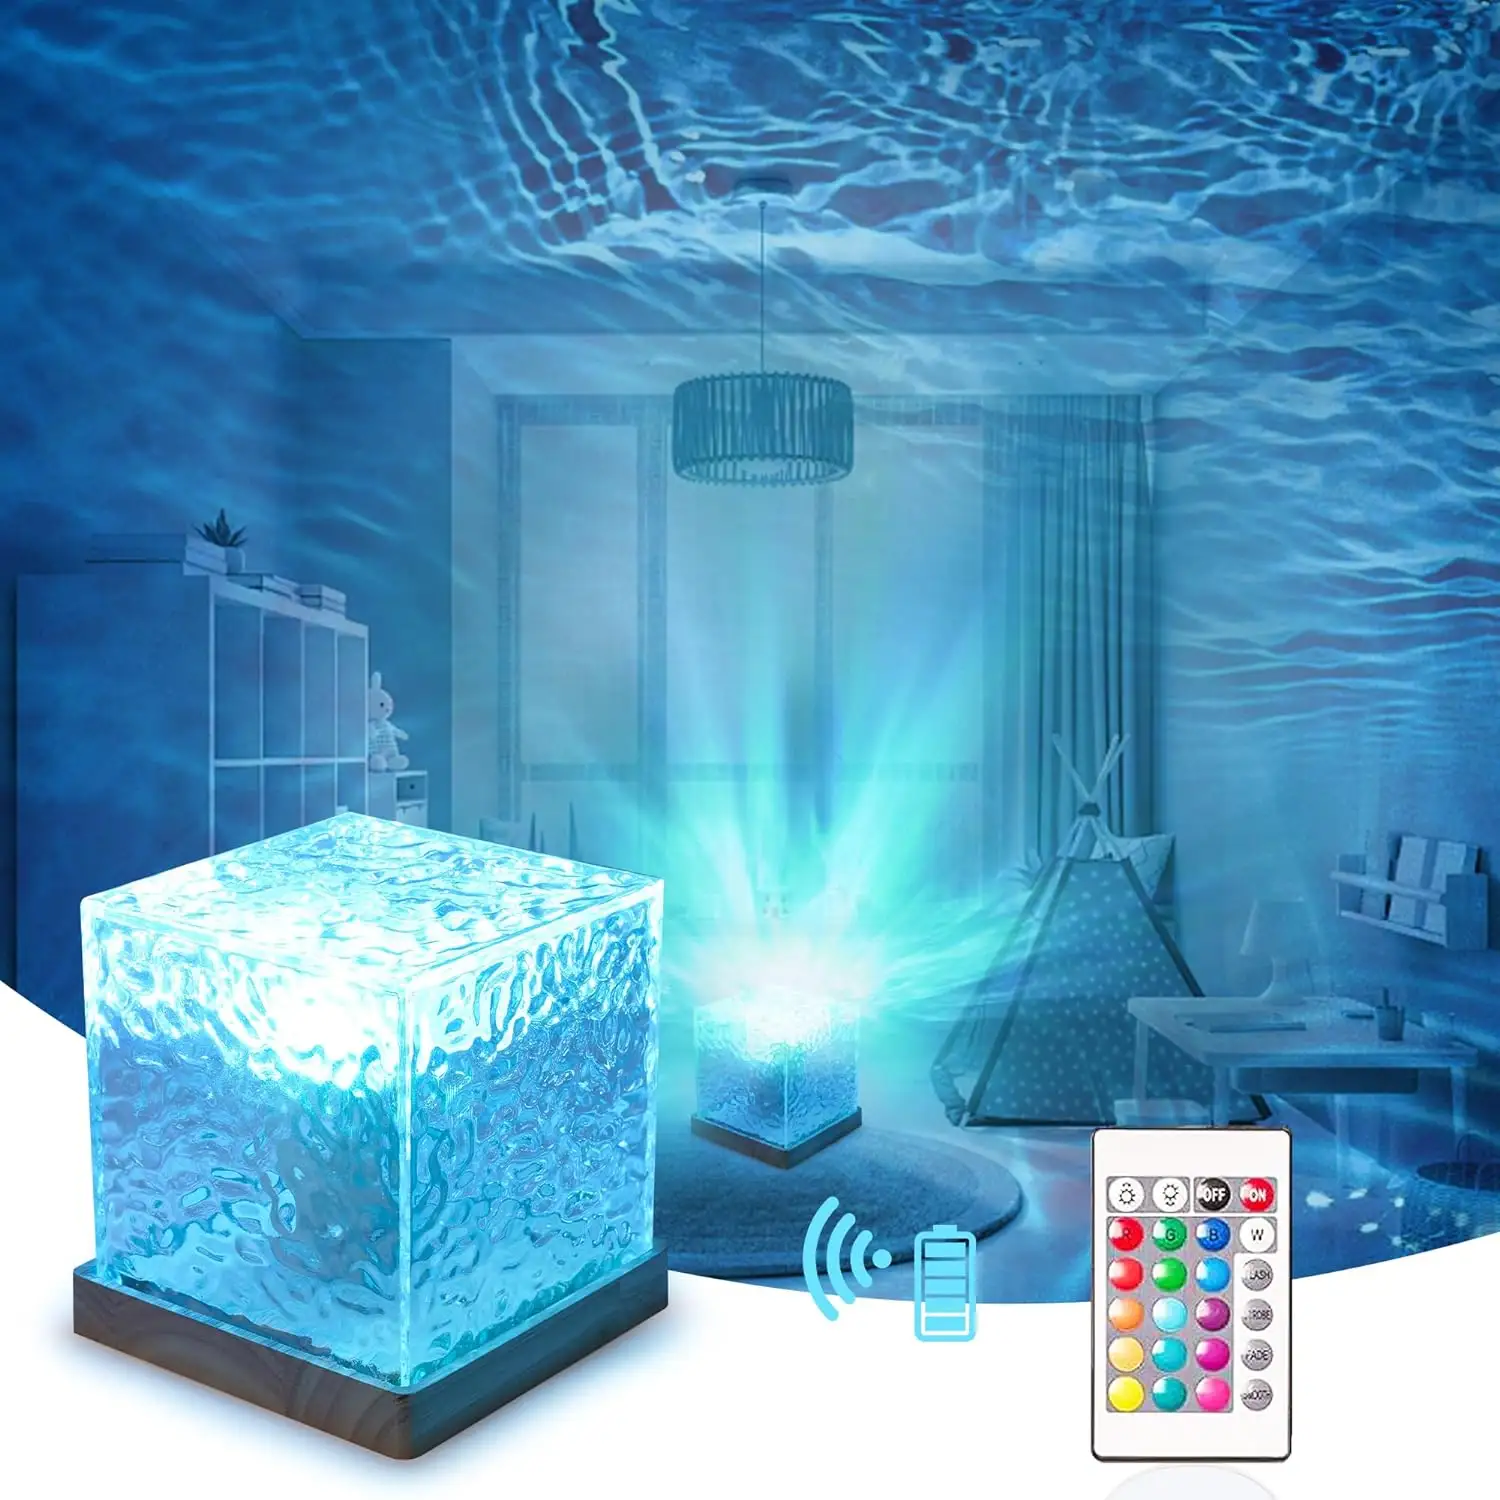 3D 16 colores giratoria cristal Aurora lámpara azul dinámica agua ondulación cubo lámpara mesa noche lámpara